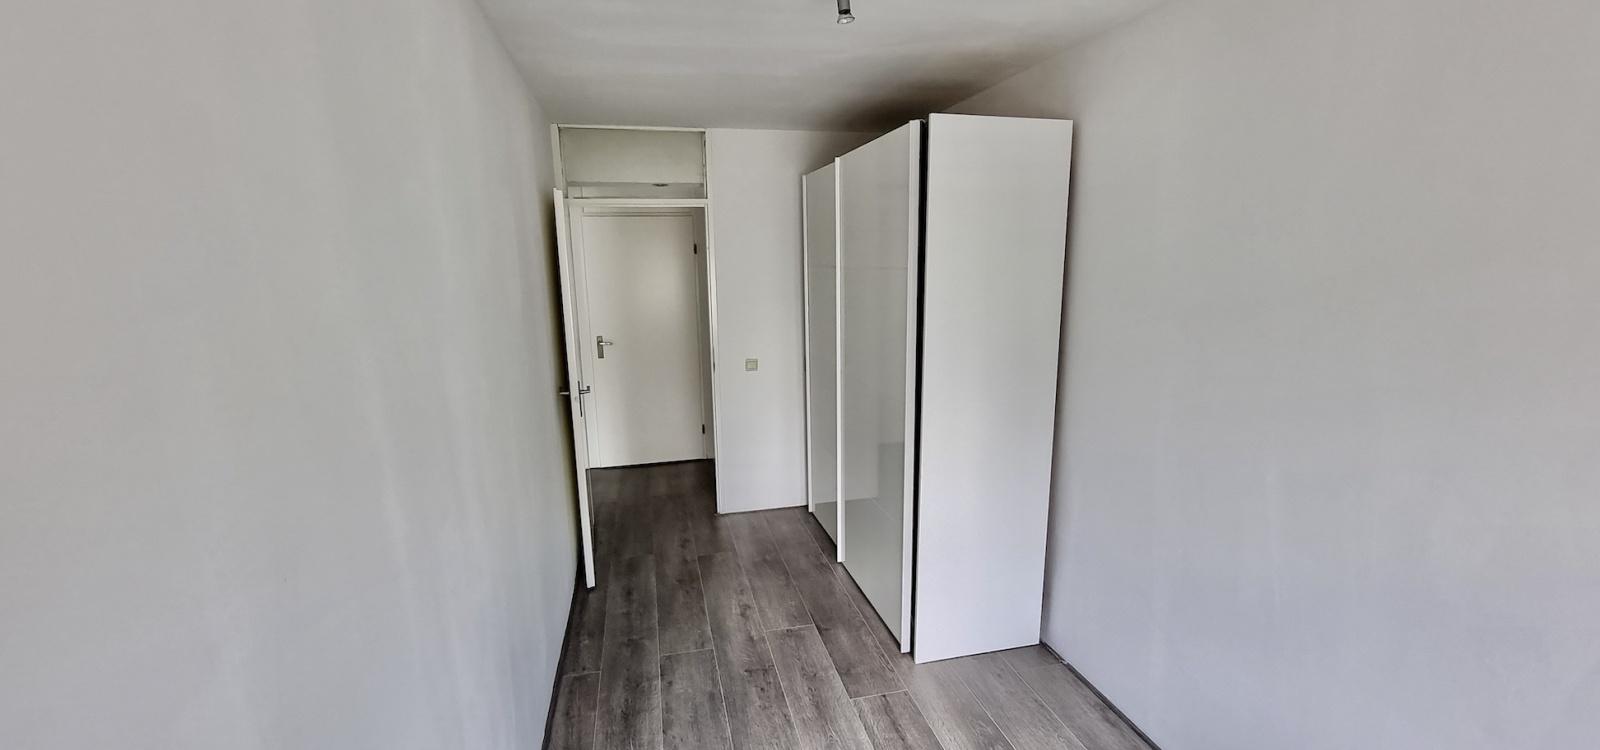 Loenermark,Netherlands 1025VP,2 Bedrooms Bedrooms,1 BathroomBathrooms,Apartment,Loenermark,1,1505